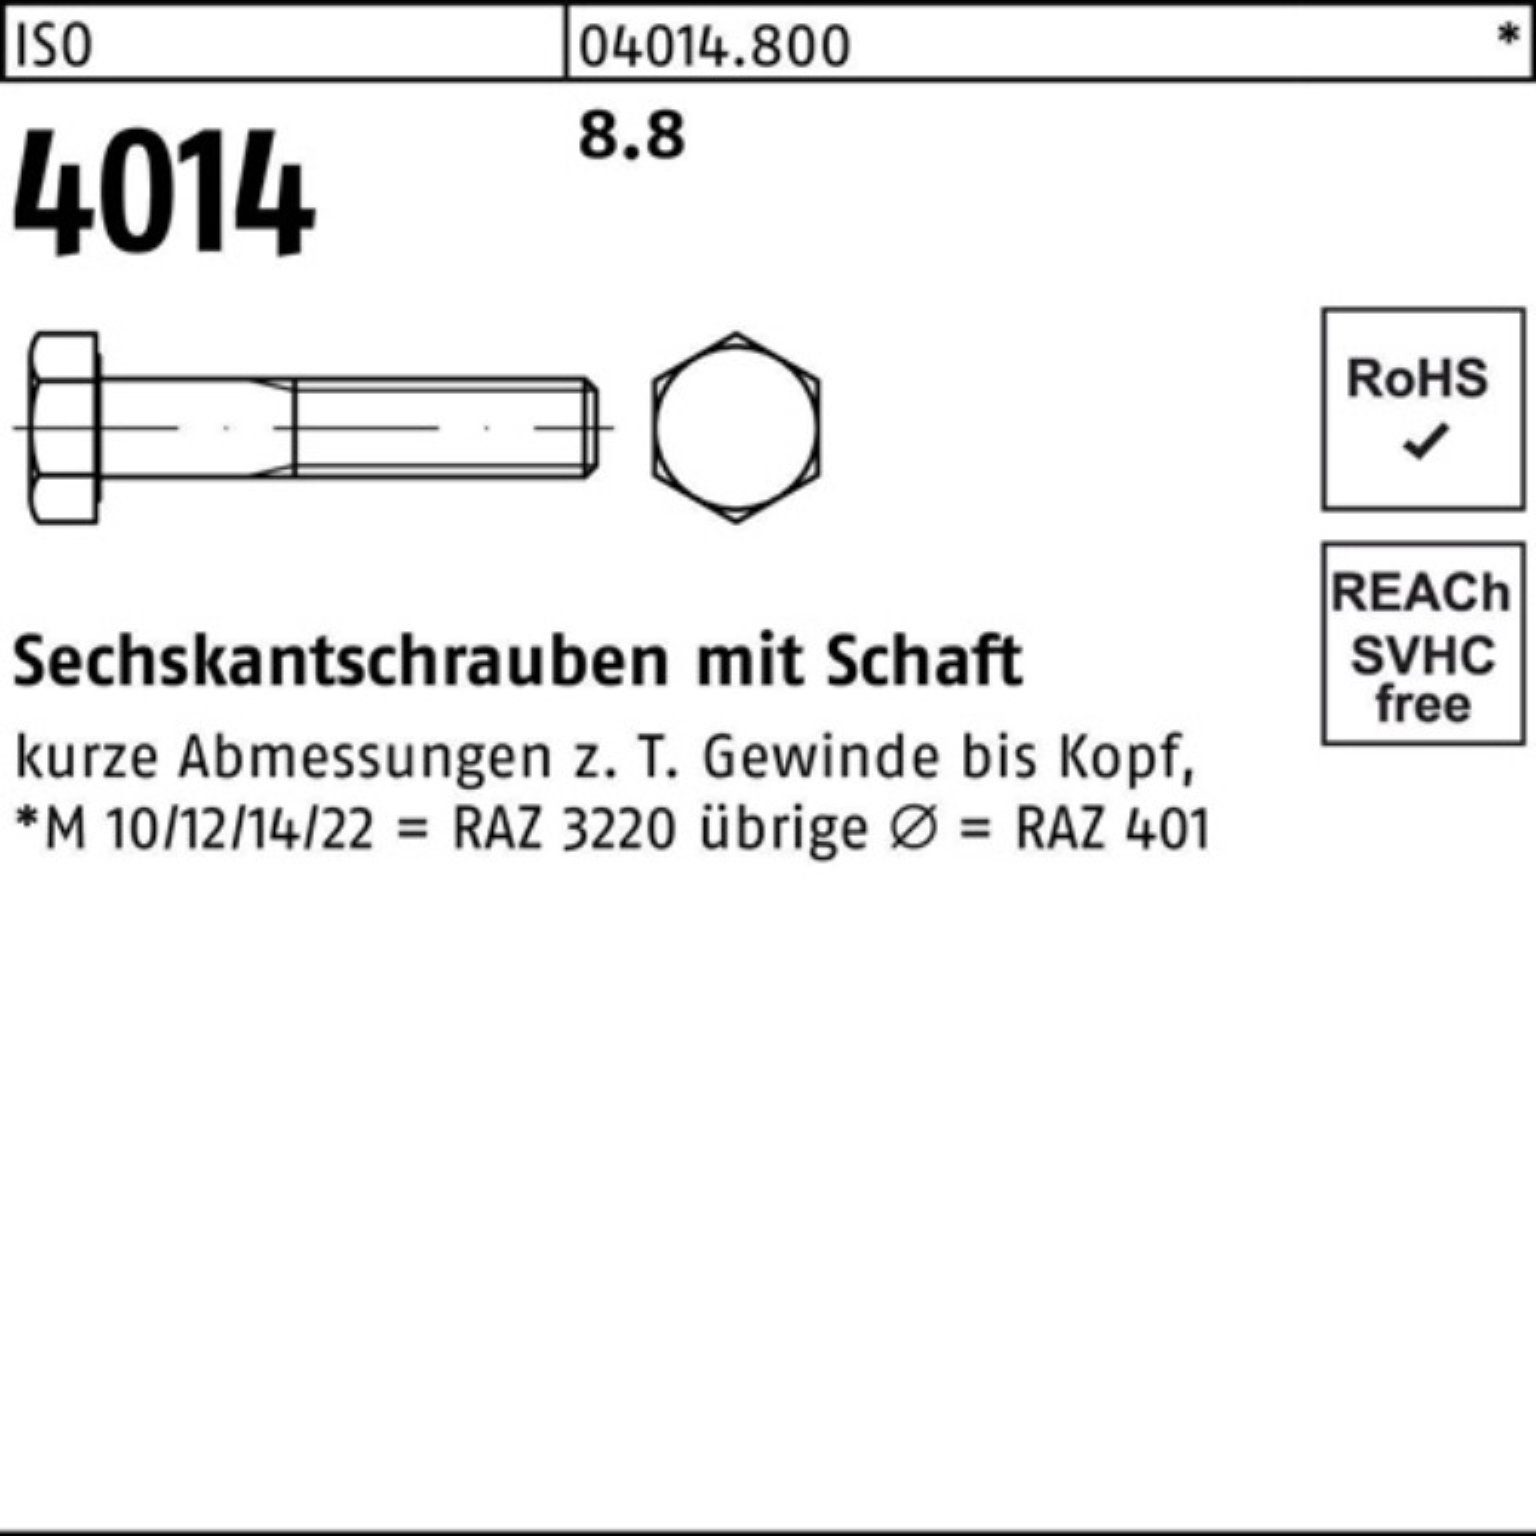 Sechskantschraube IS Bufab 10 120 4014 M22x Sechskantschraube ISO Pack Schaft 8.8 100er Stück